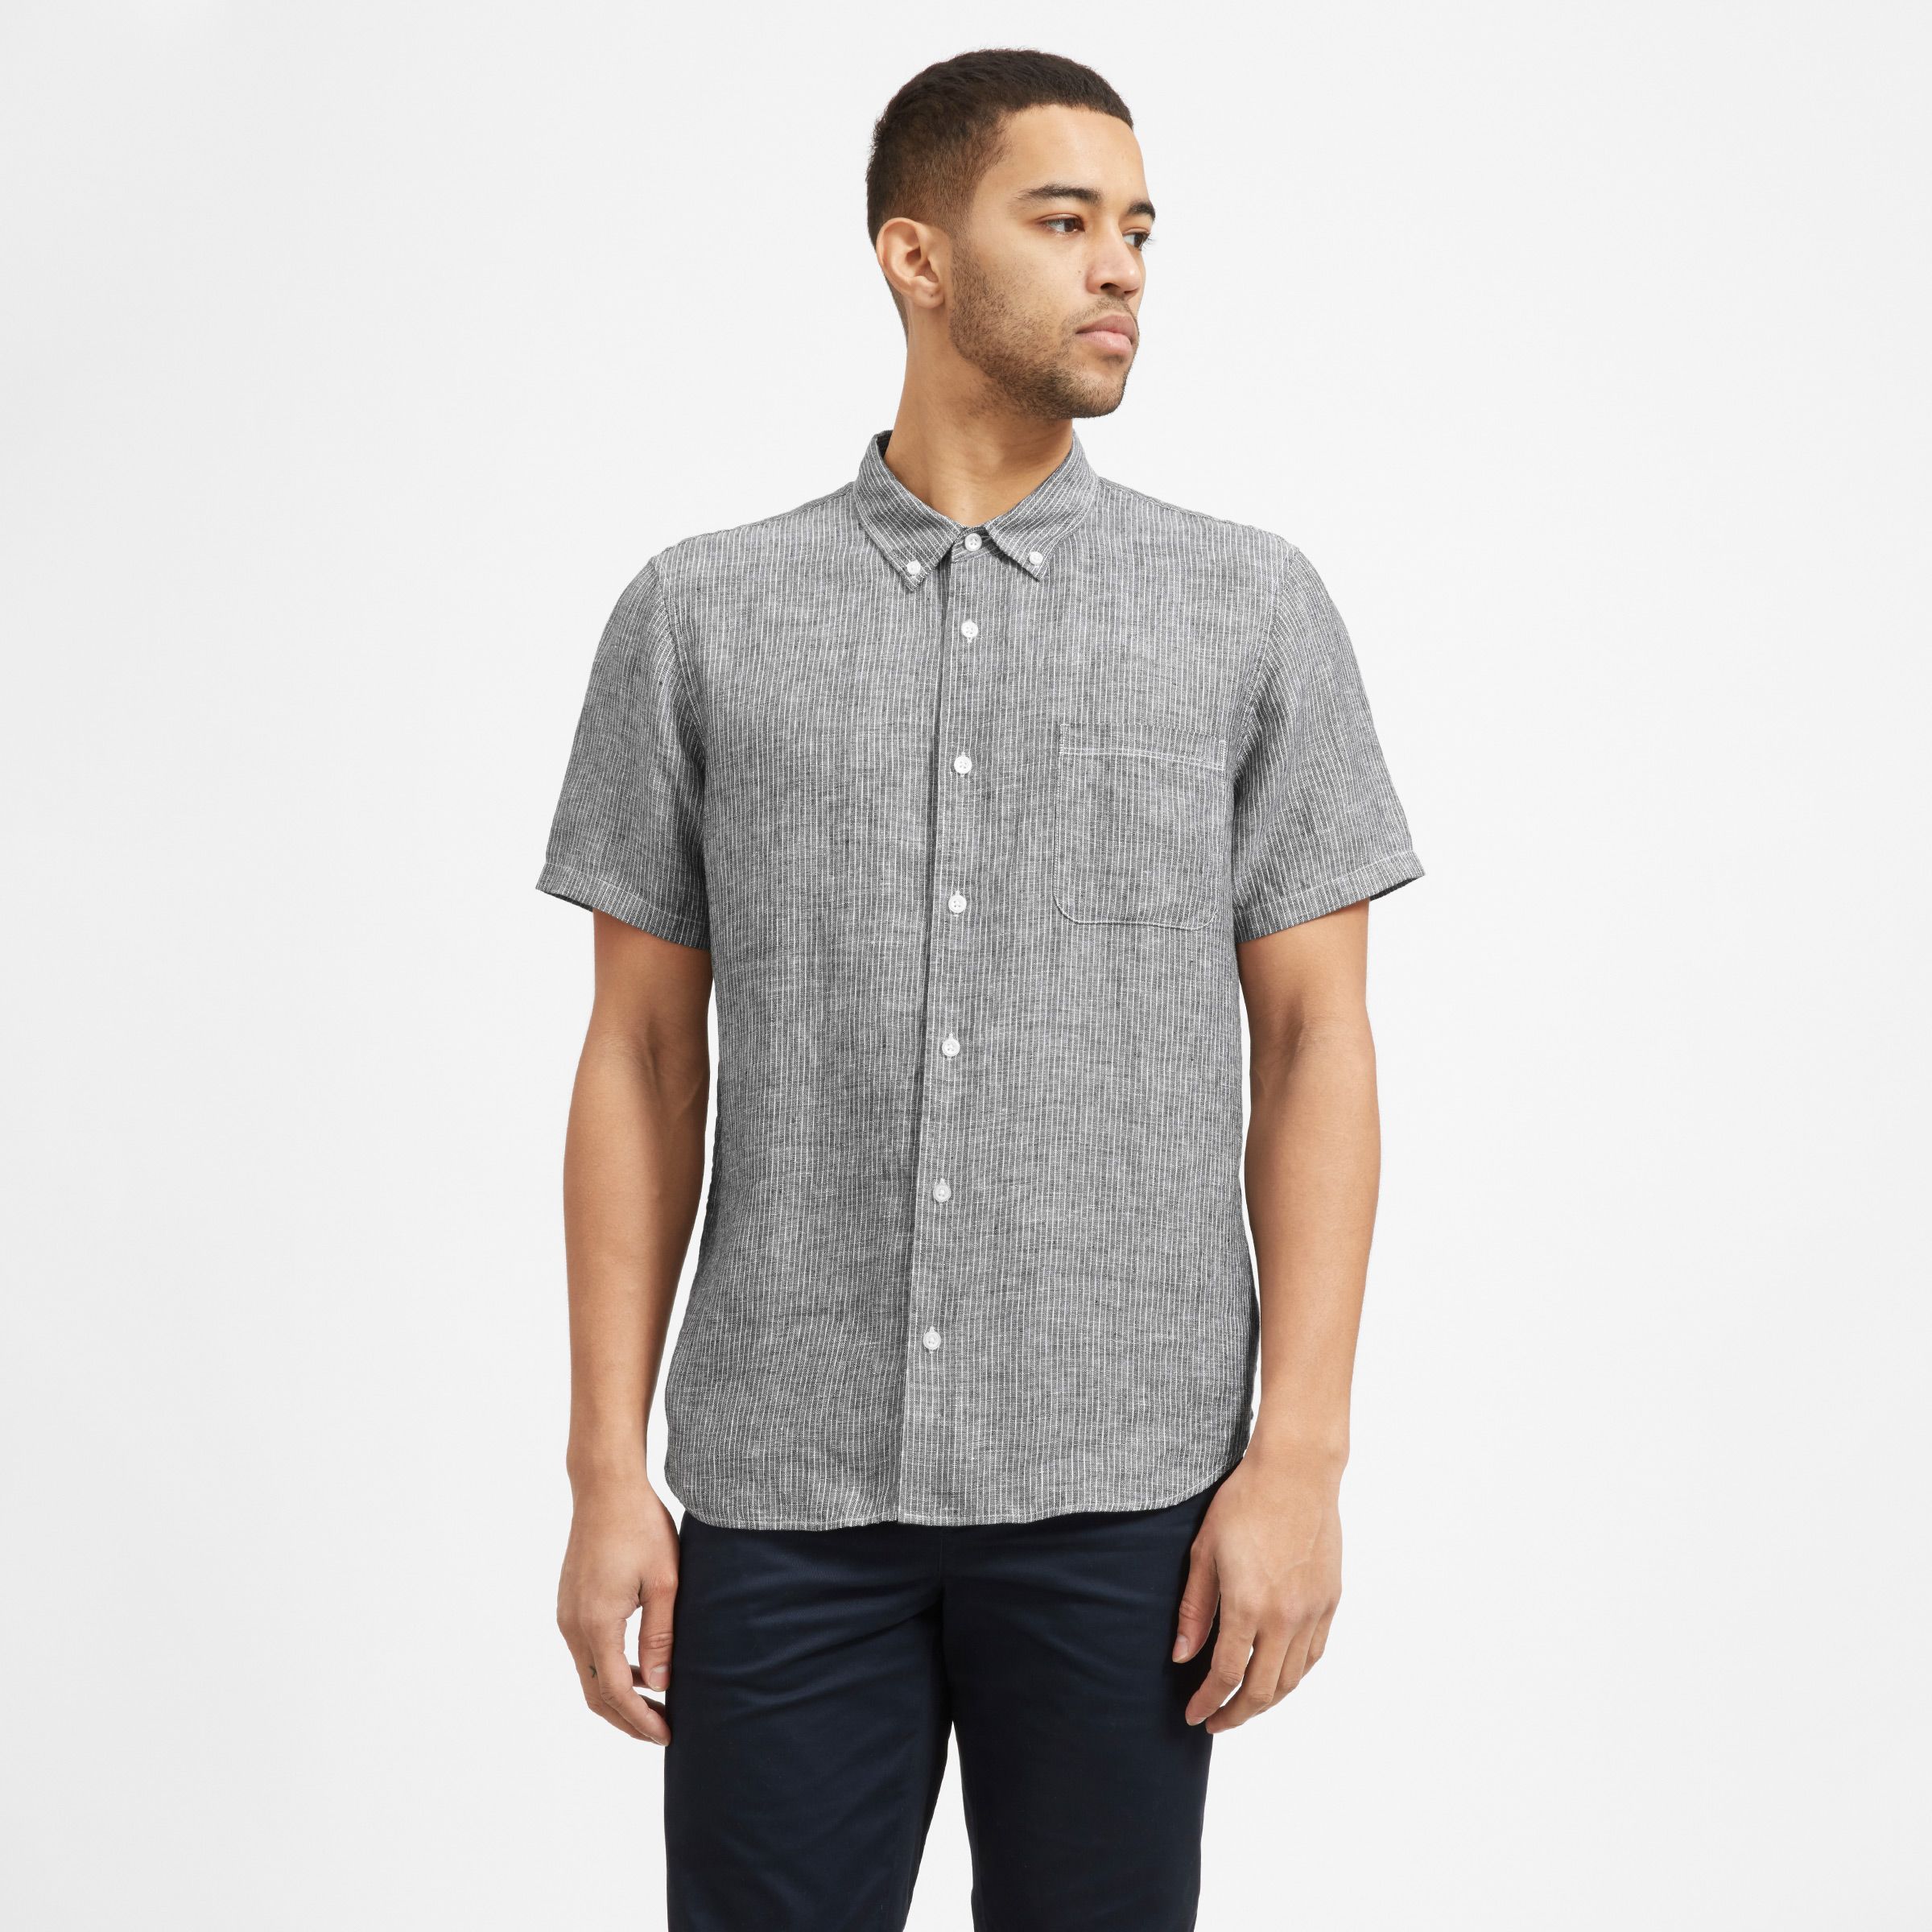 Gocgt Men Short Sleeve Shirts Solid Summer Casual Button Down Shirt 